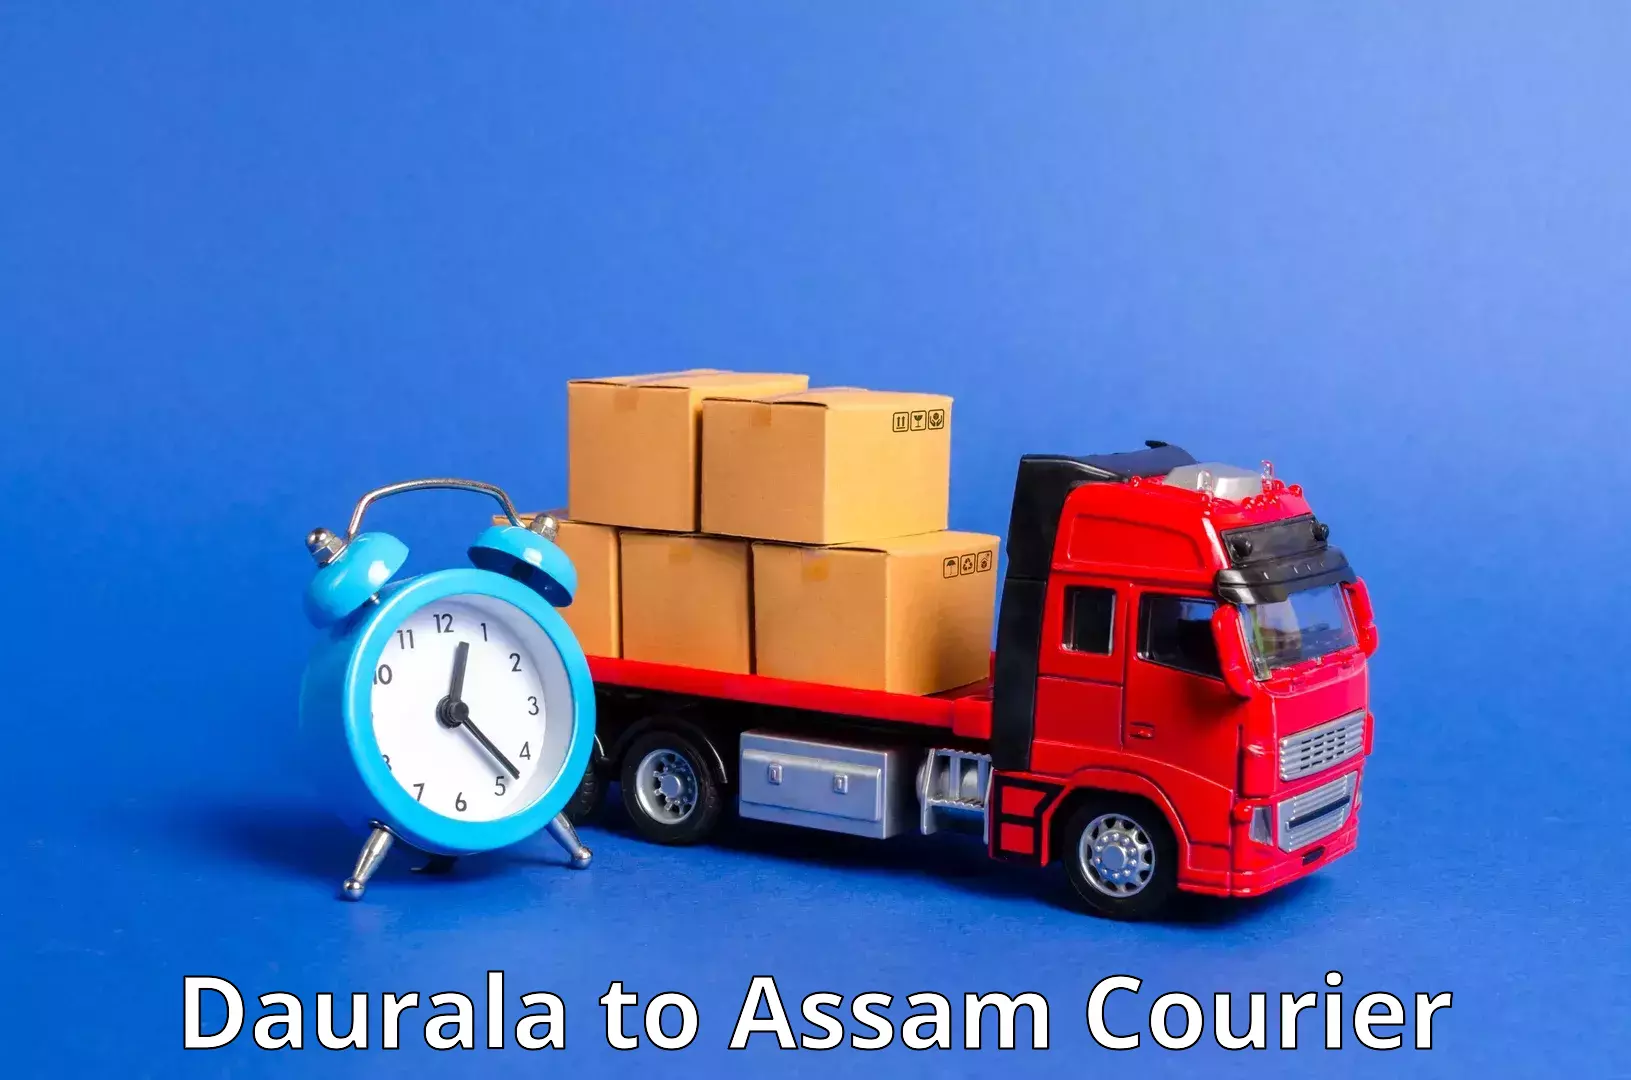 24/7 shipping services Daurala to Kamrup